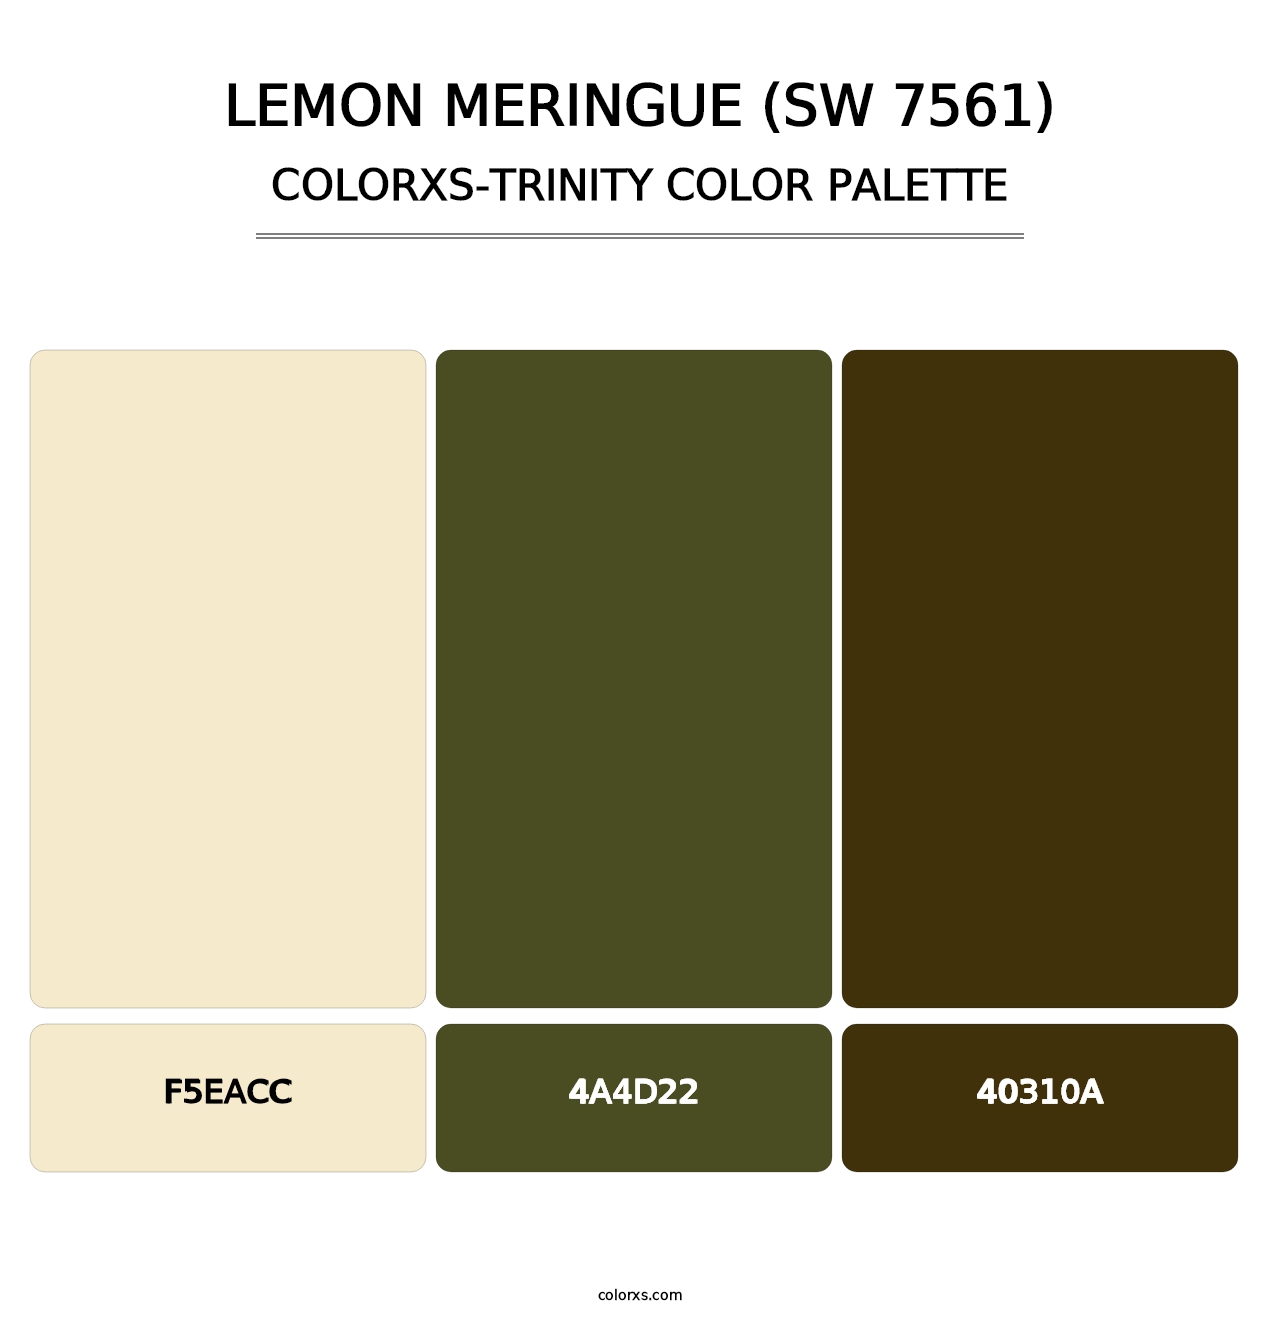 Lemon Meringue (SW 7561) - Colorxs Trinity Palette